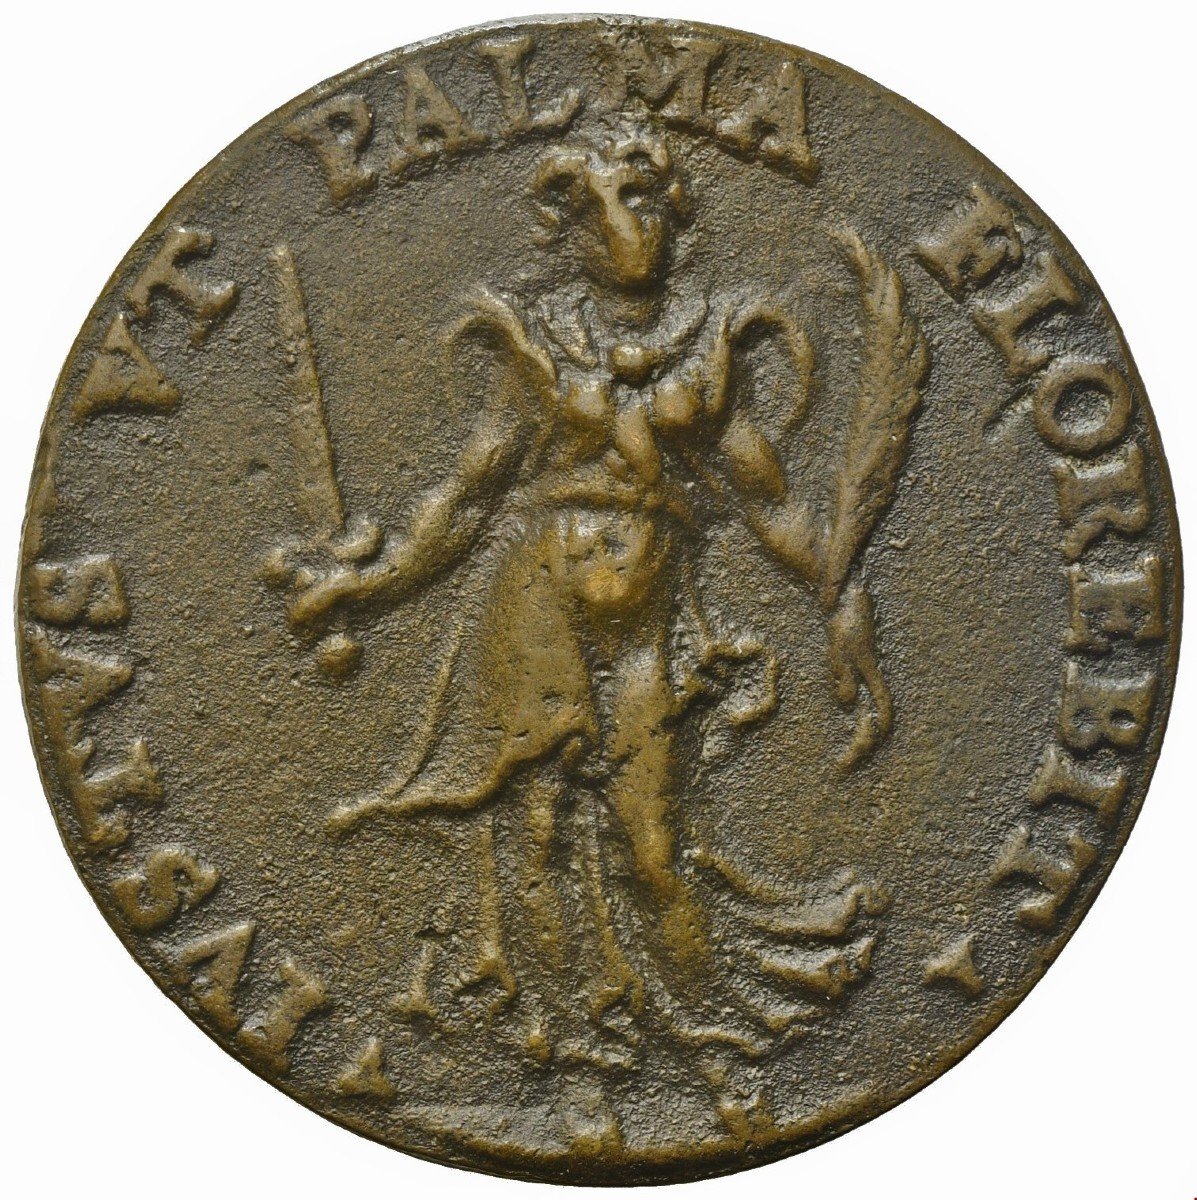 Rara medaglia rinascimentale in bronzo fuso rappresentante il giurista Hieronymus Morcat-photo-2